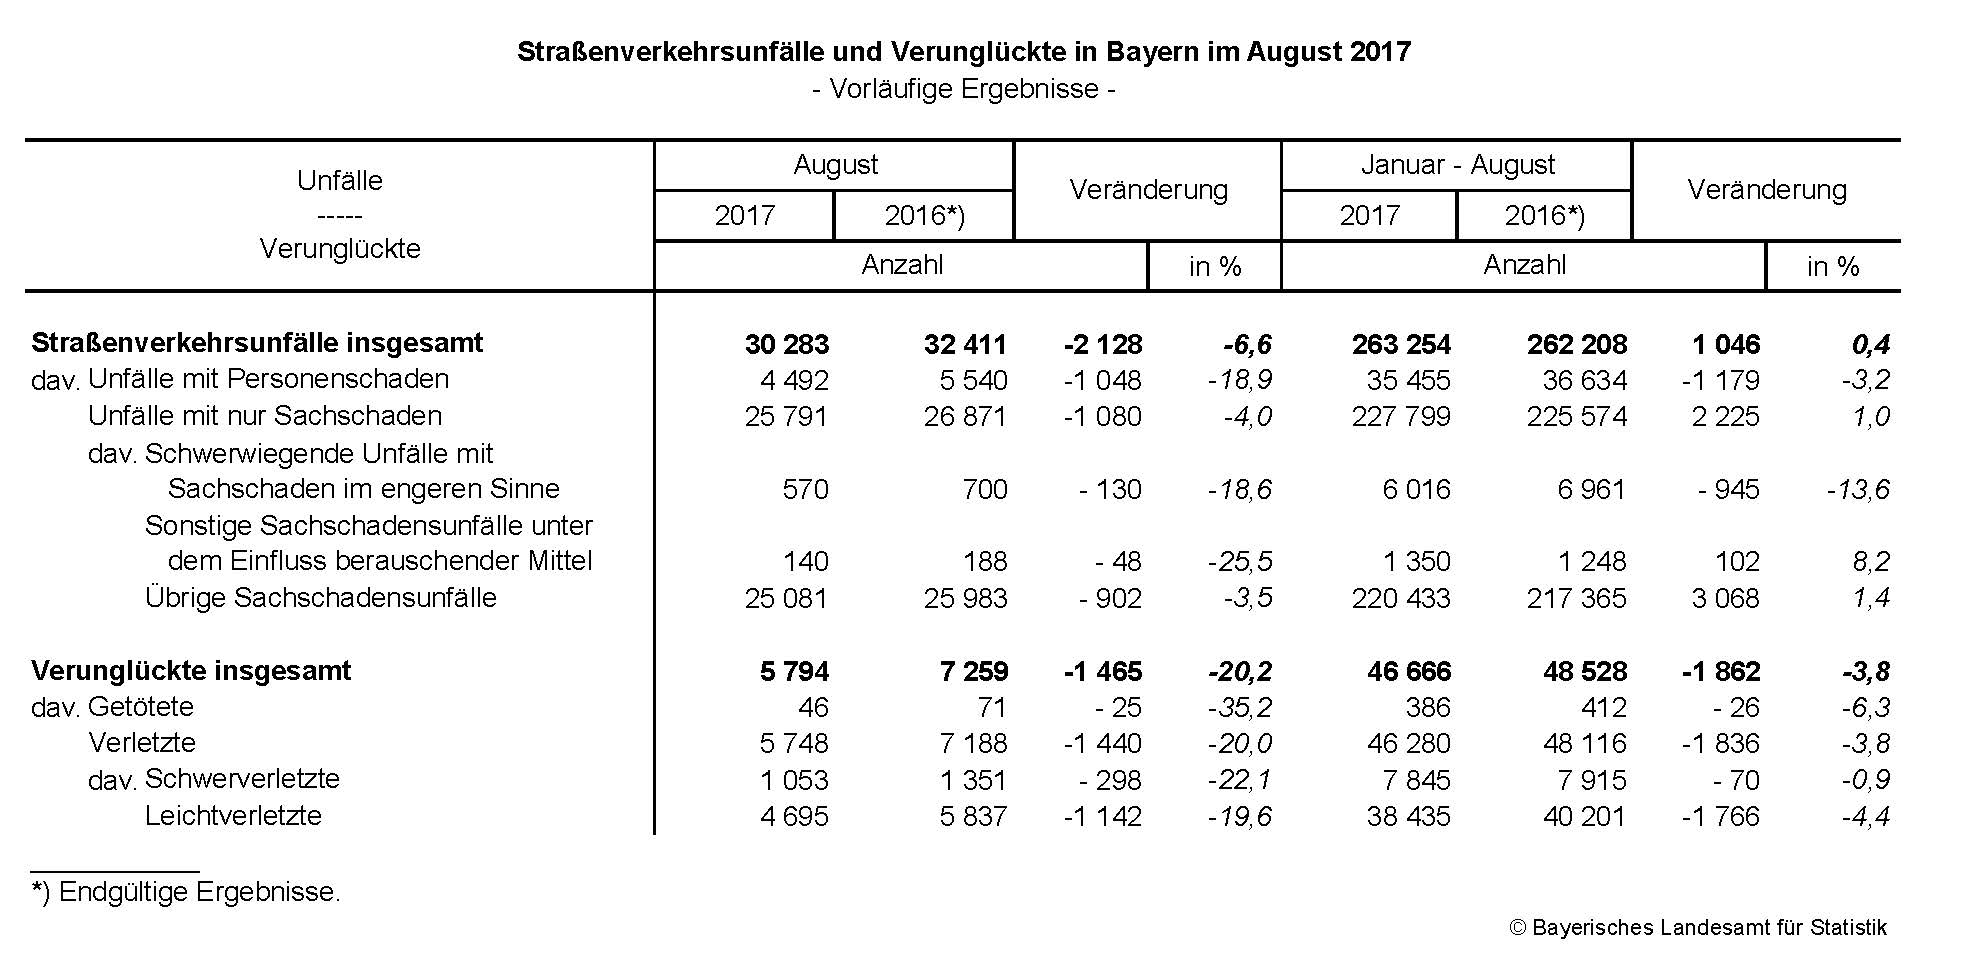 Straßenverkehrsunfälle und Verunglückte in Bayern im August 2017